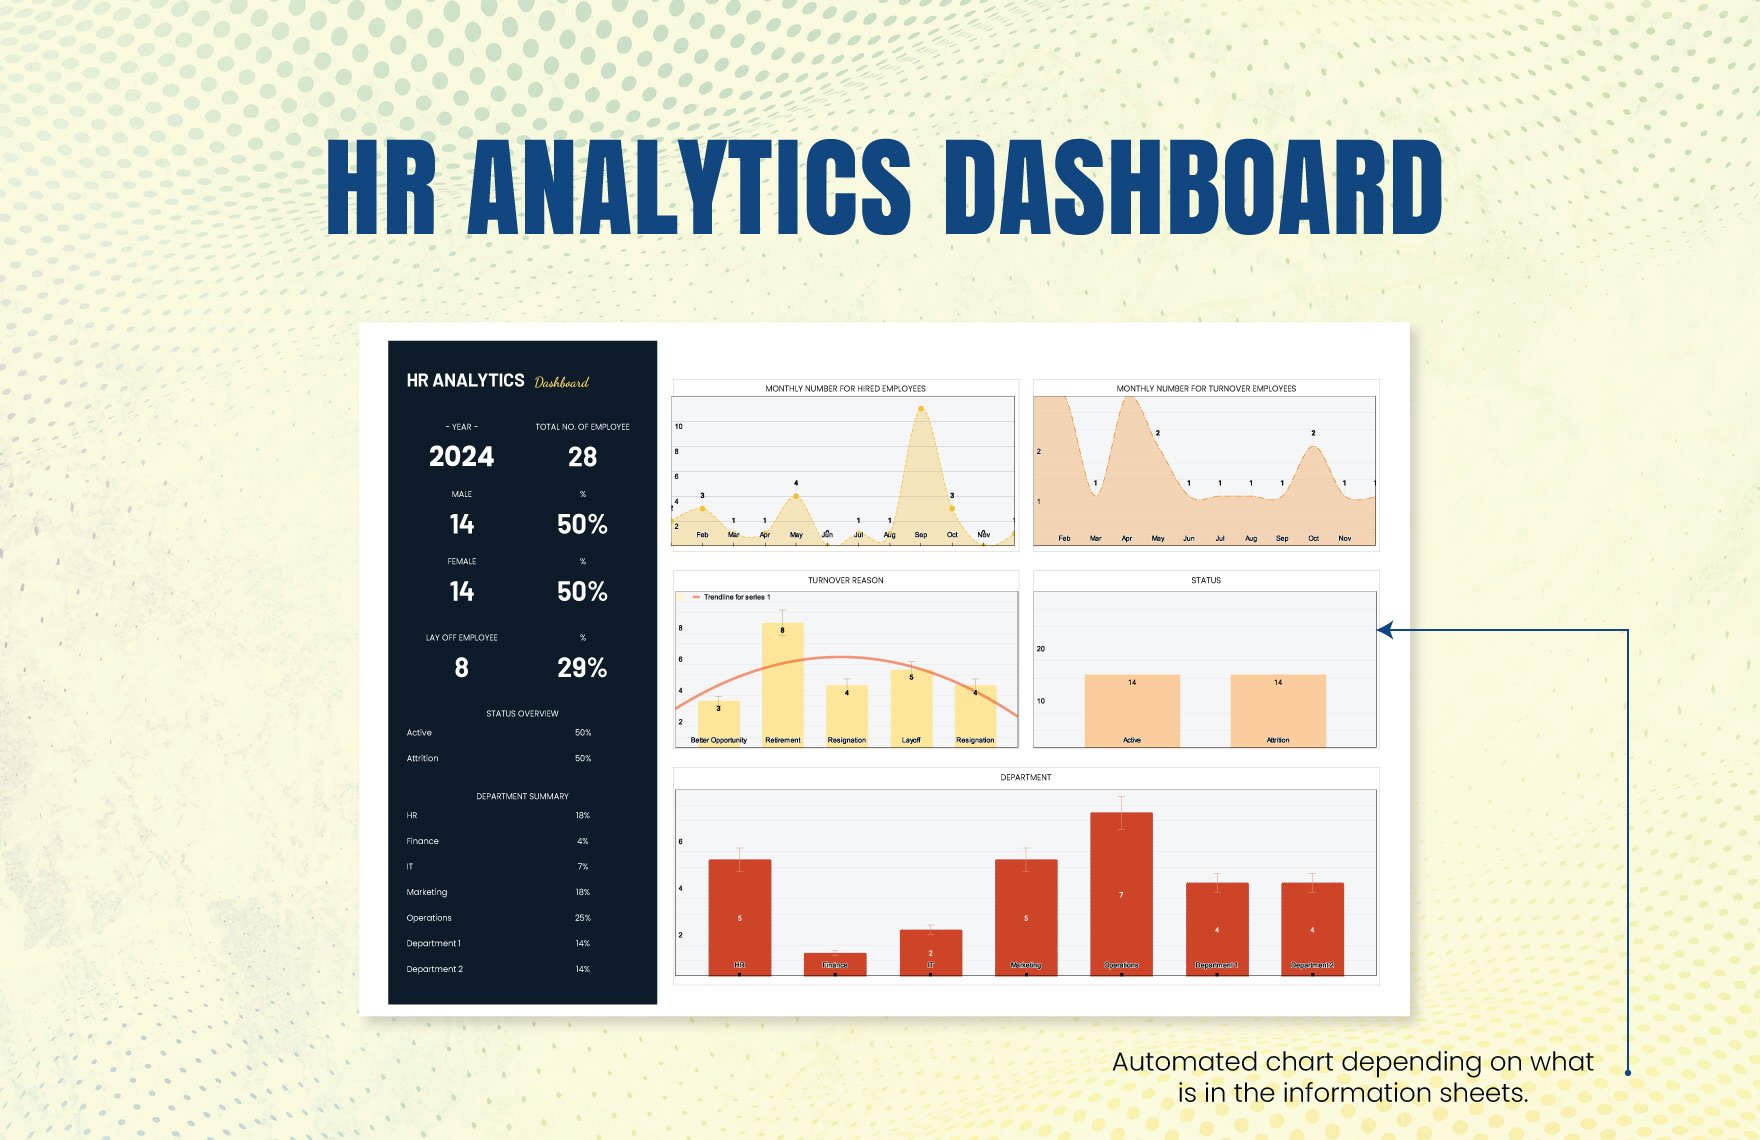 HR Analytics Dashboard Template